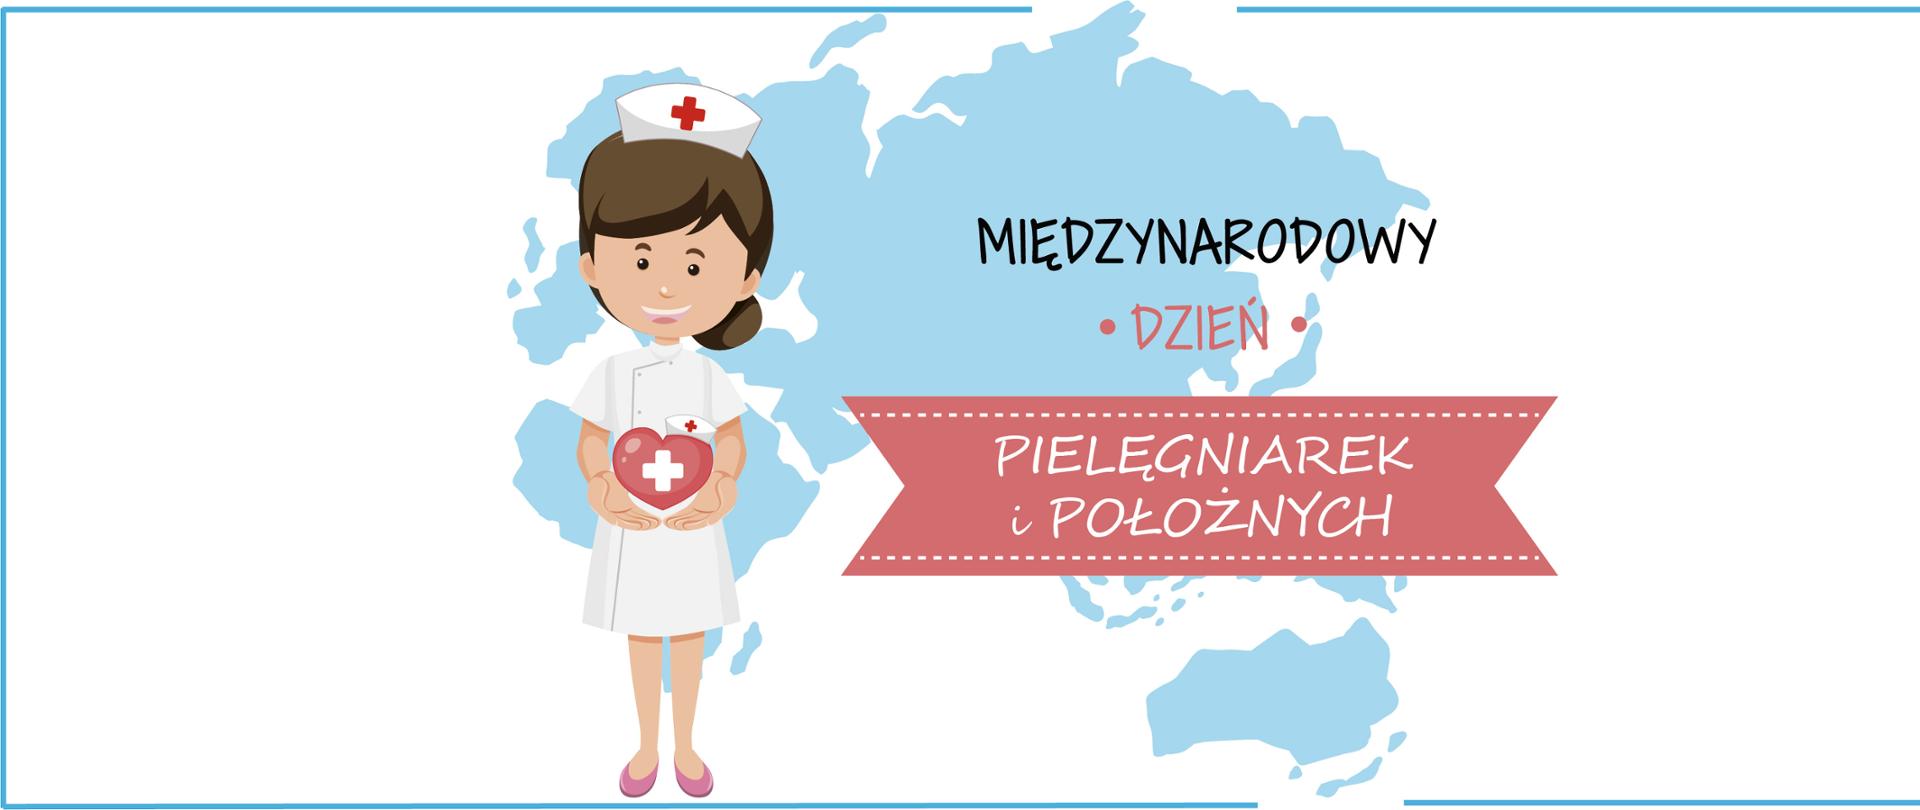 Ilustracja pielęgniarki stojącej na tle mapy świata. Napis: Międzynarodowy Dzień Pielęgniarek i Położnych